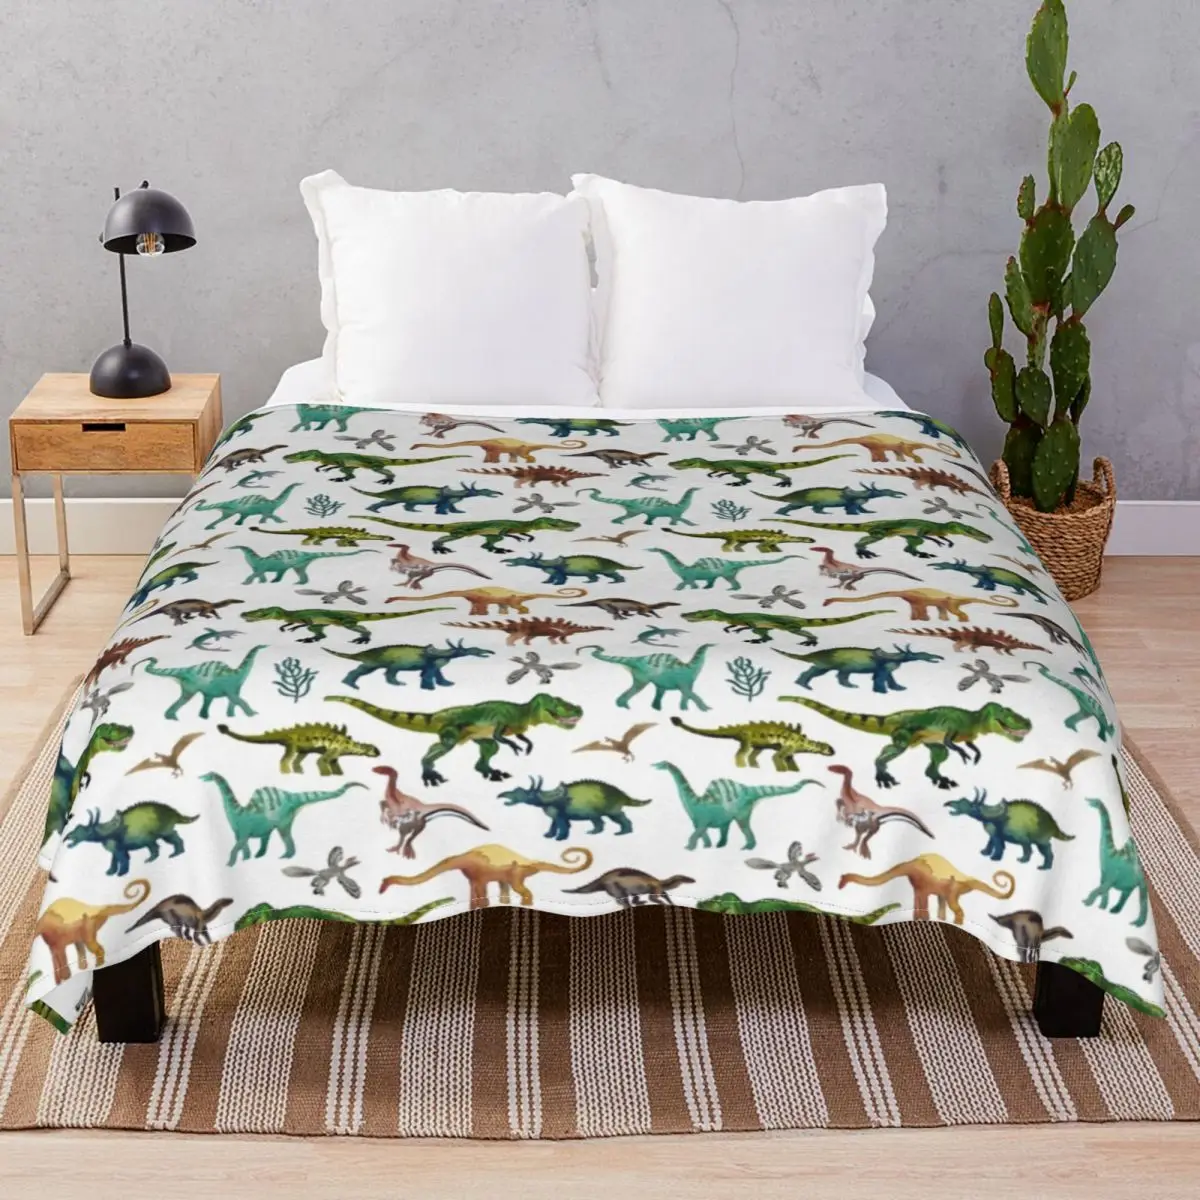 Dinosaur Pattern Blankets Velvet Print Lightweight Thin Throw Blanket for Bedding Sofa Travel Cinema